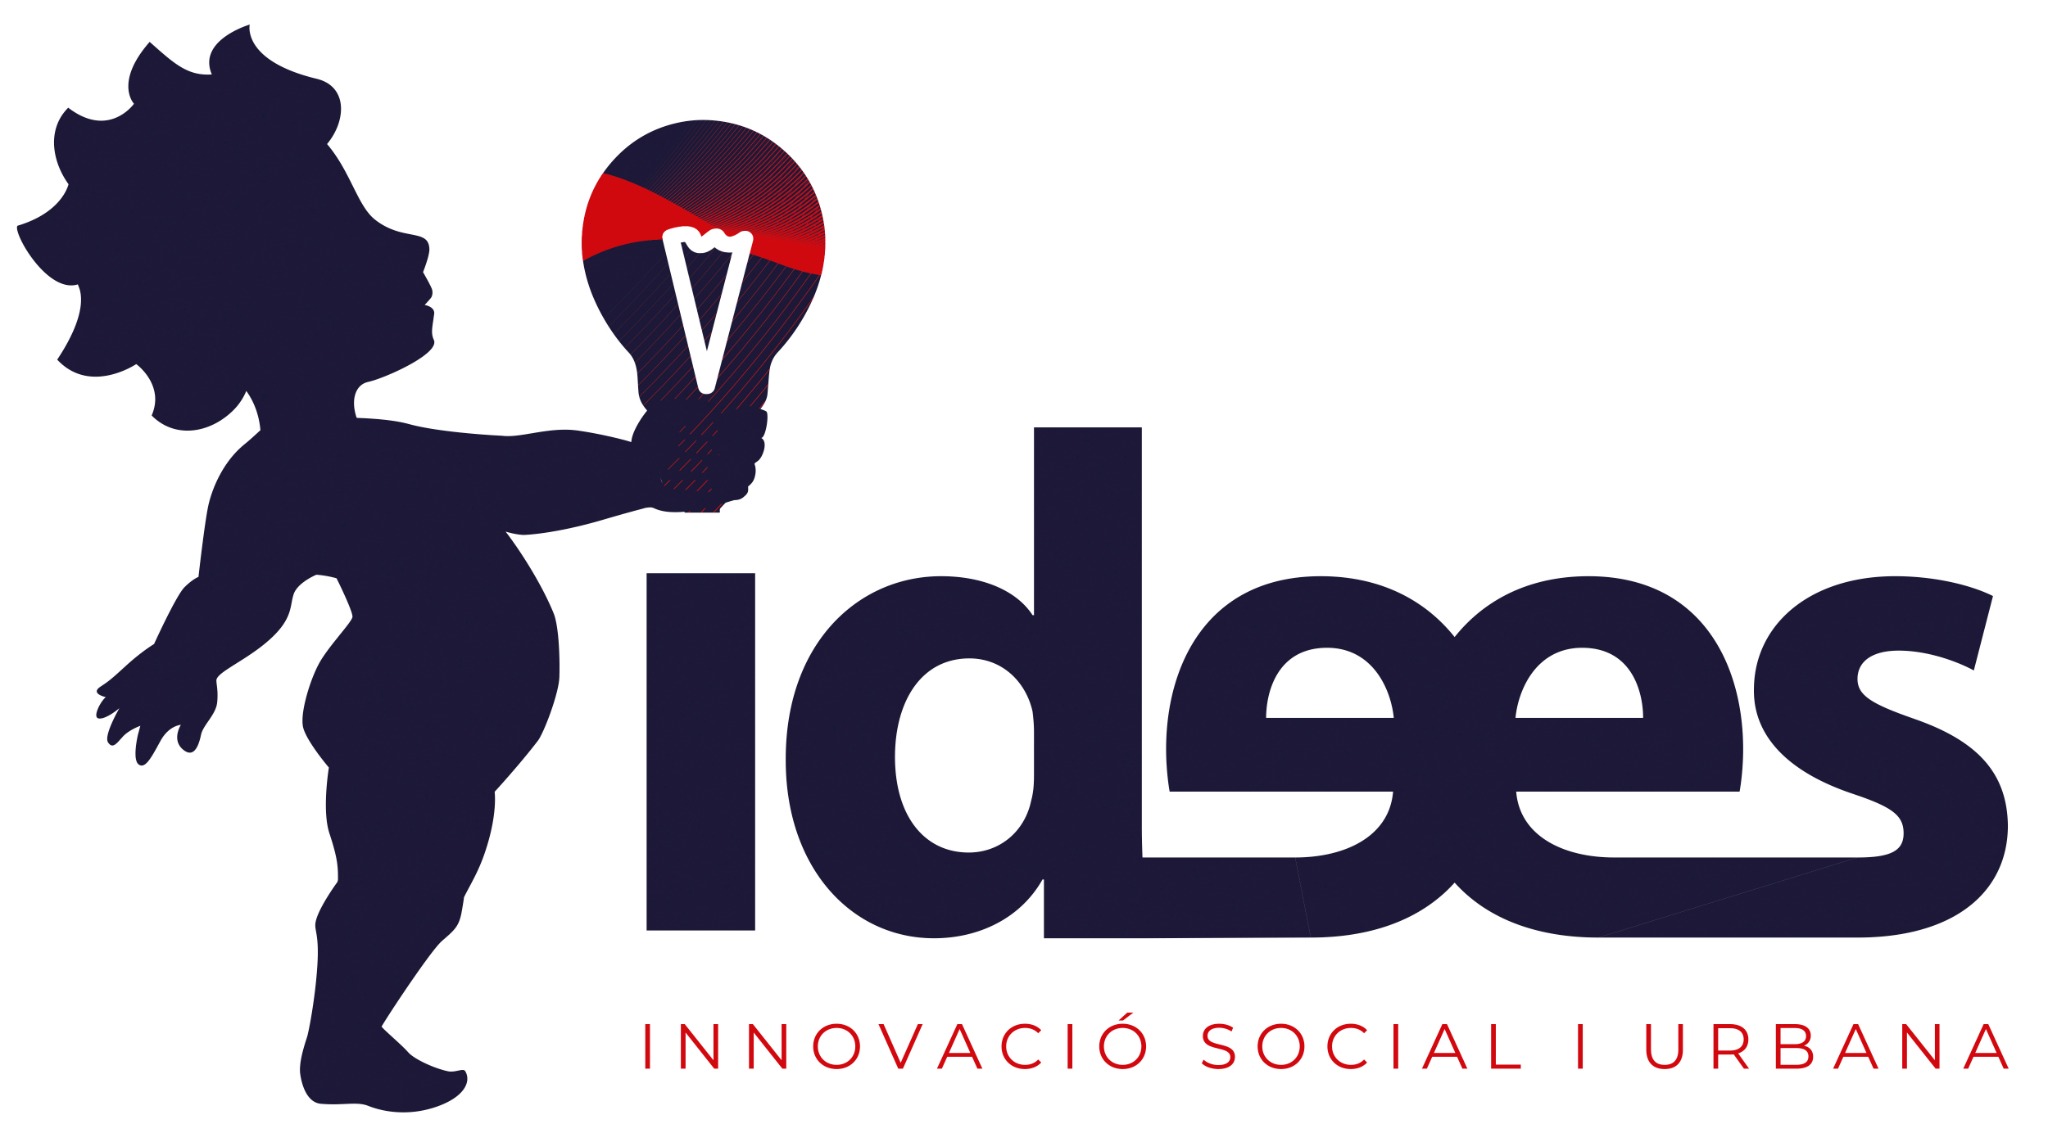 Subvencions per al desenvolupament de projectes d'innovació social i urbana a la Ciutat de València